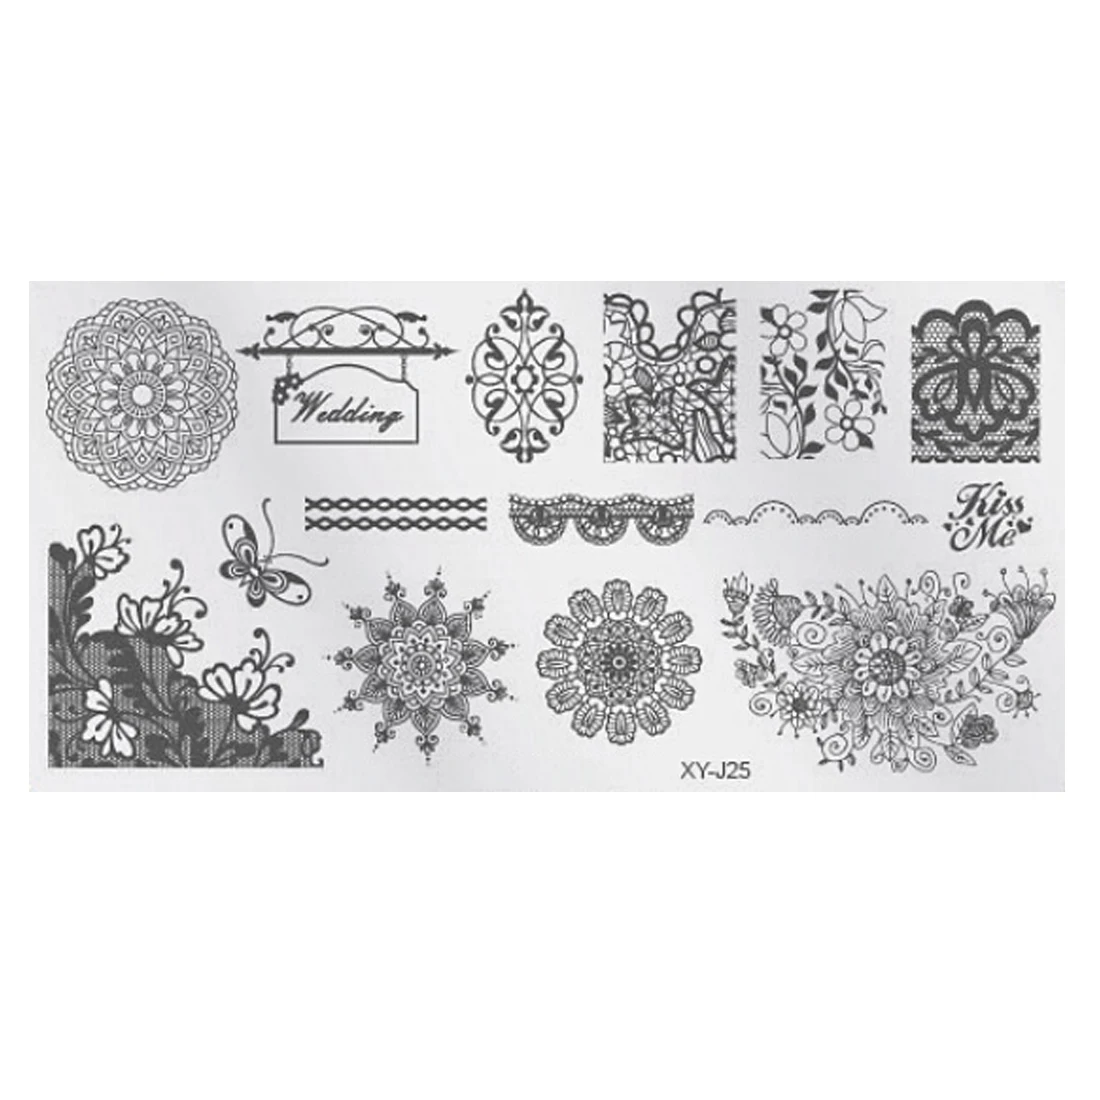 Шаблоны для дизайна ногтей штамповки пластины DIY кружевные цветы красивые наклейки полировка печать маникюрные инструменты - Цвет: XY-J24